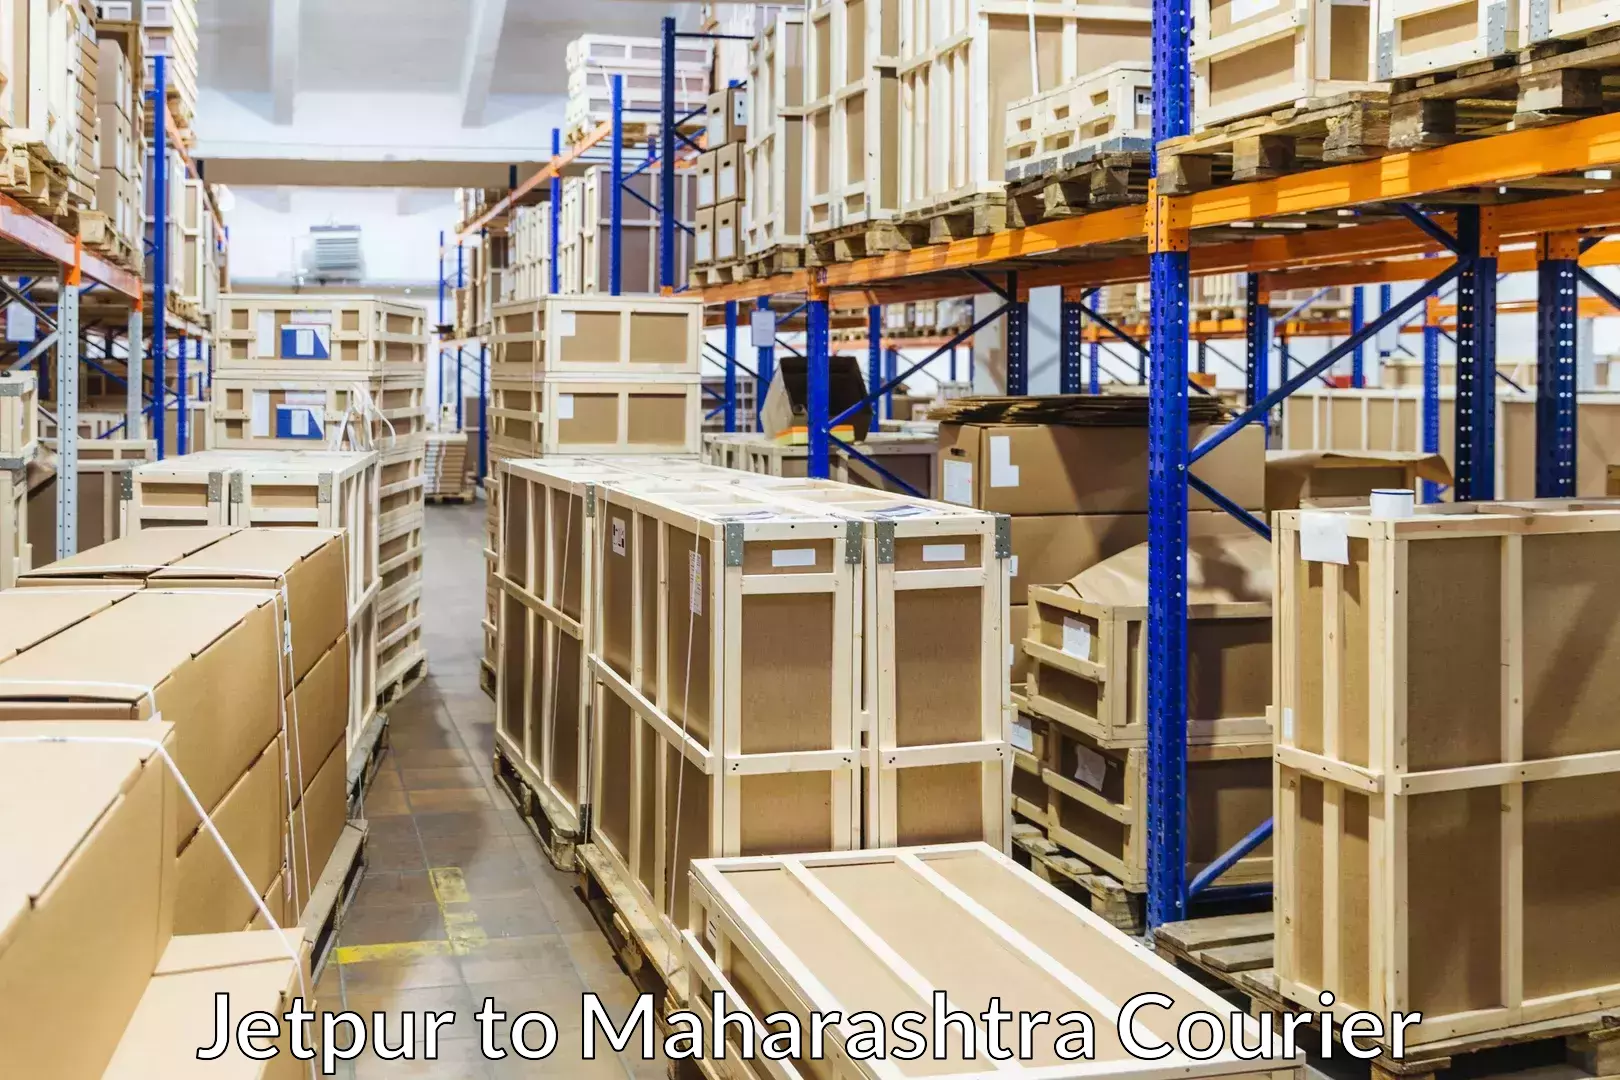 Furniture moving experts Jetpur to Maharashtra